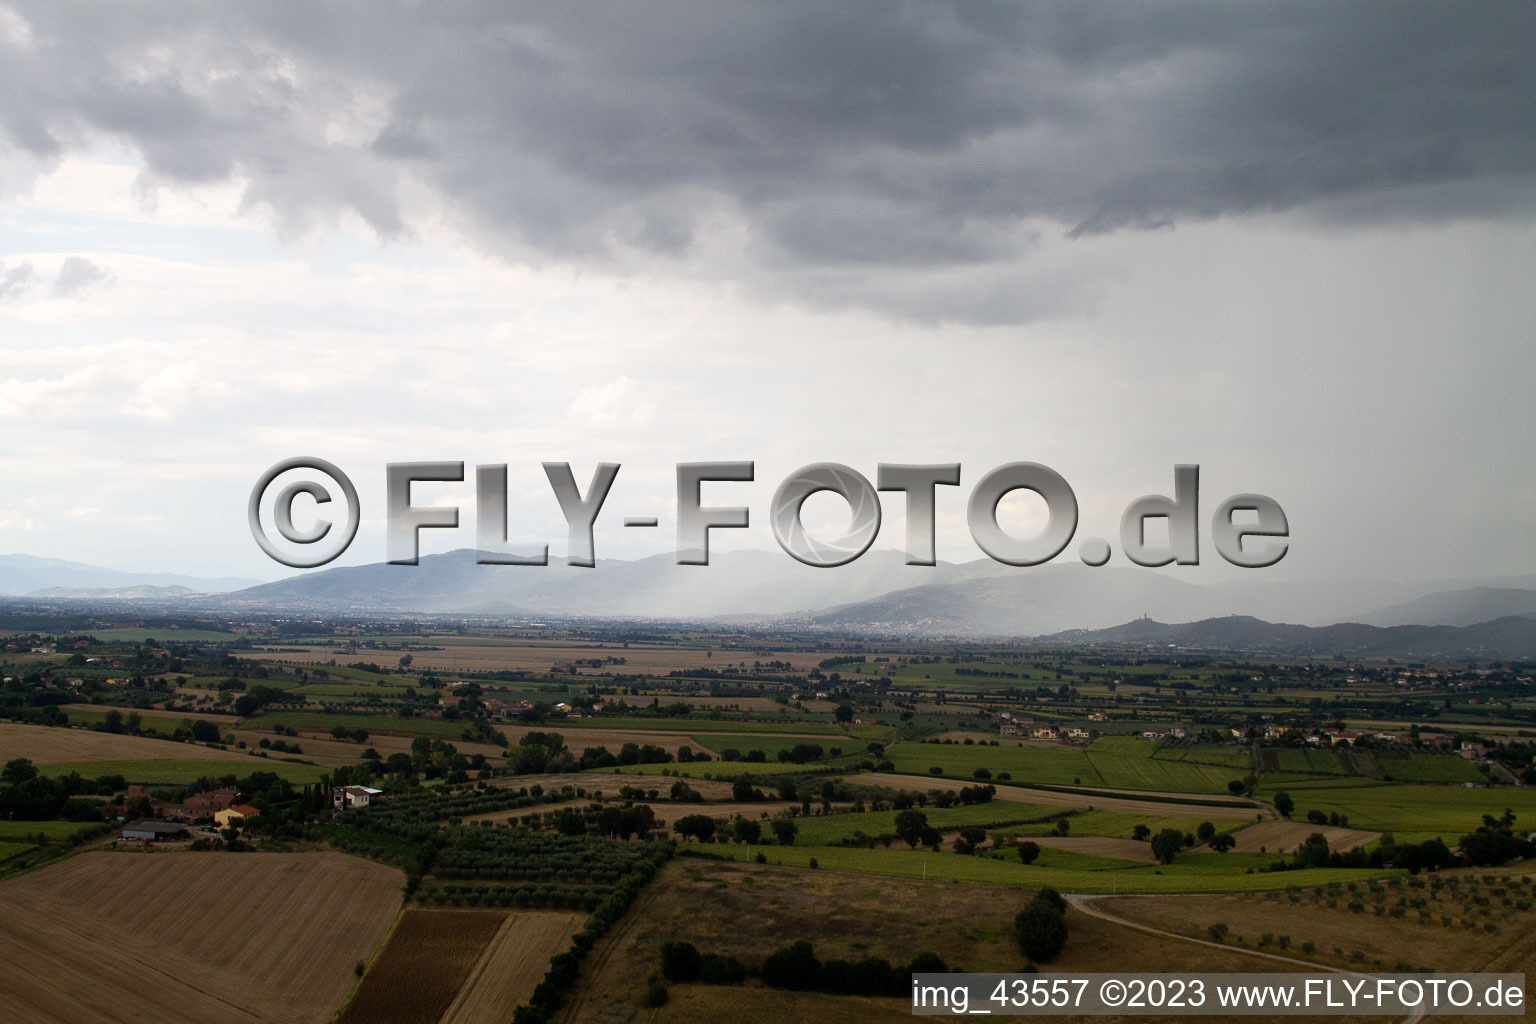 Vue aérienne de Fratticiola dans le département Toscane, Italie